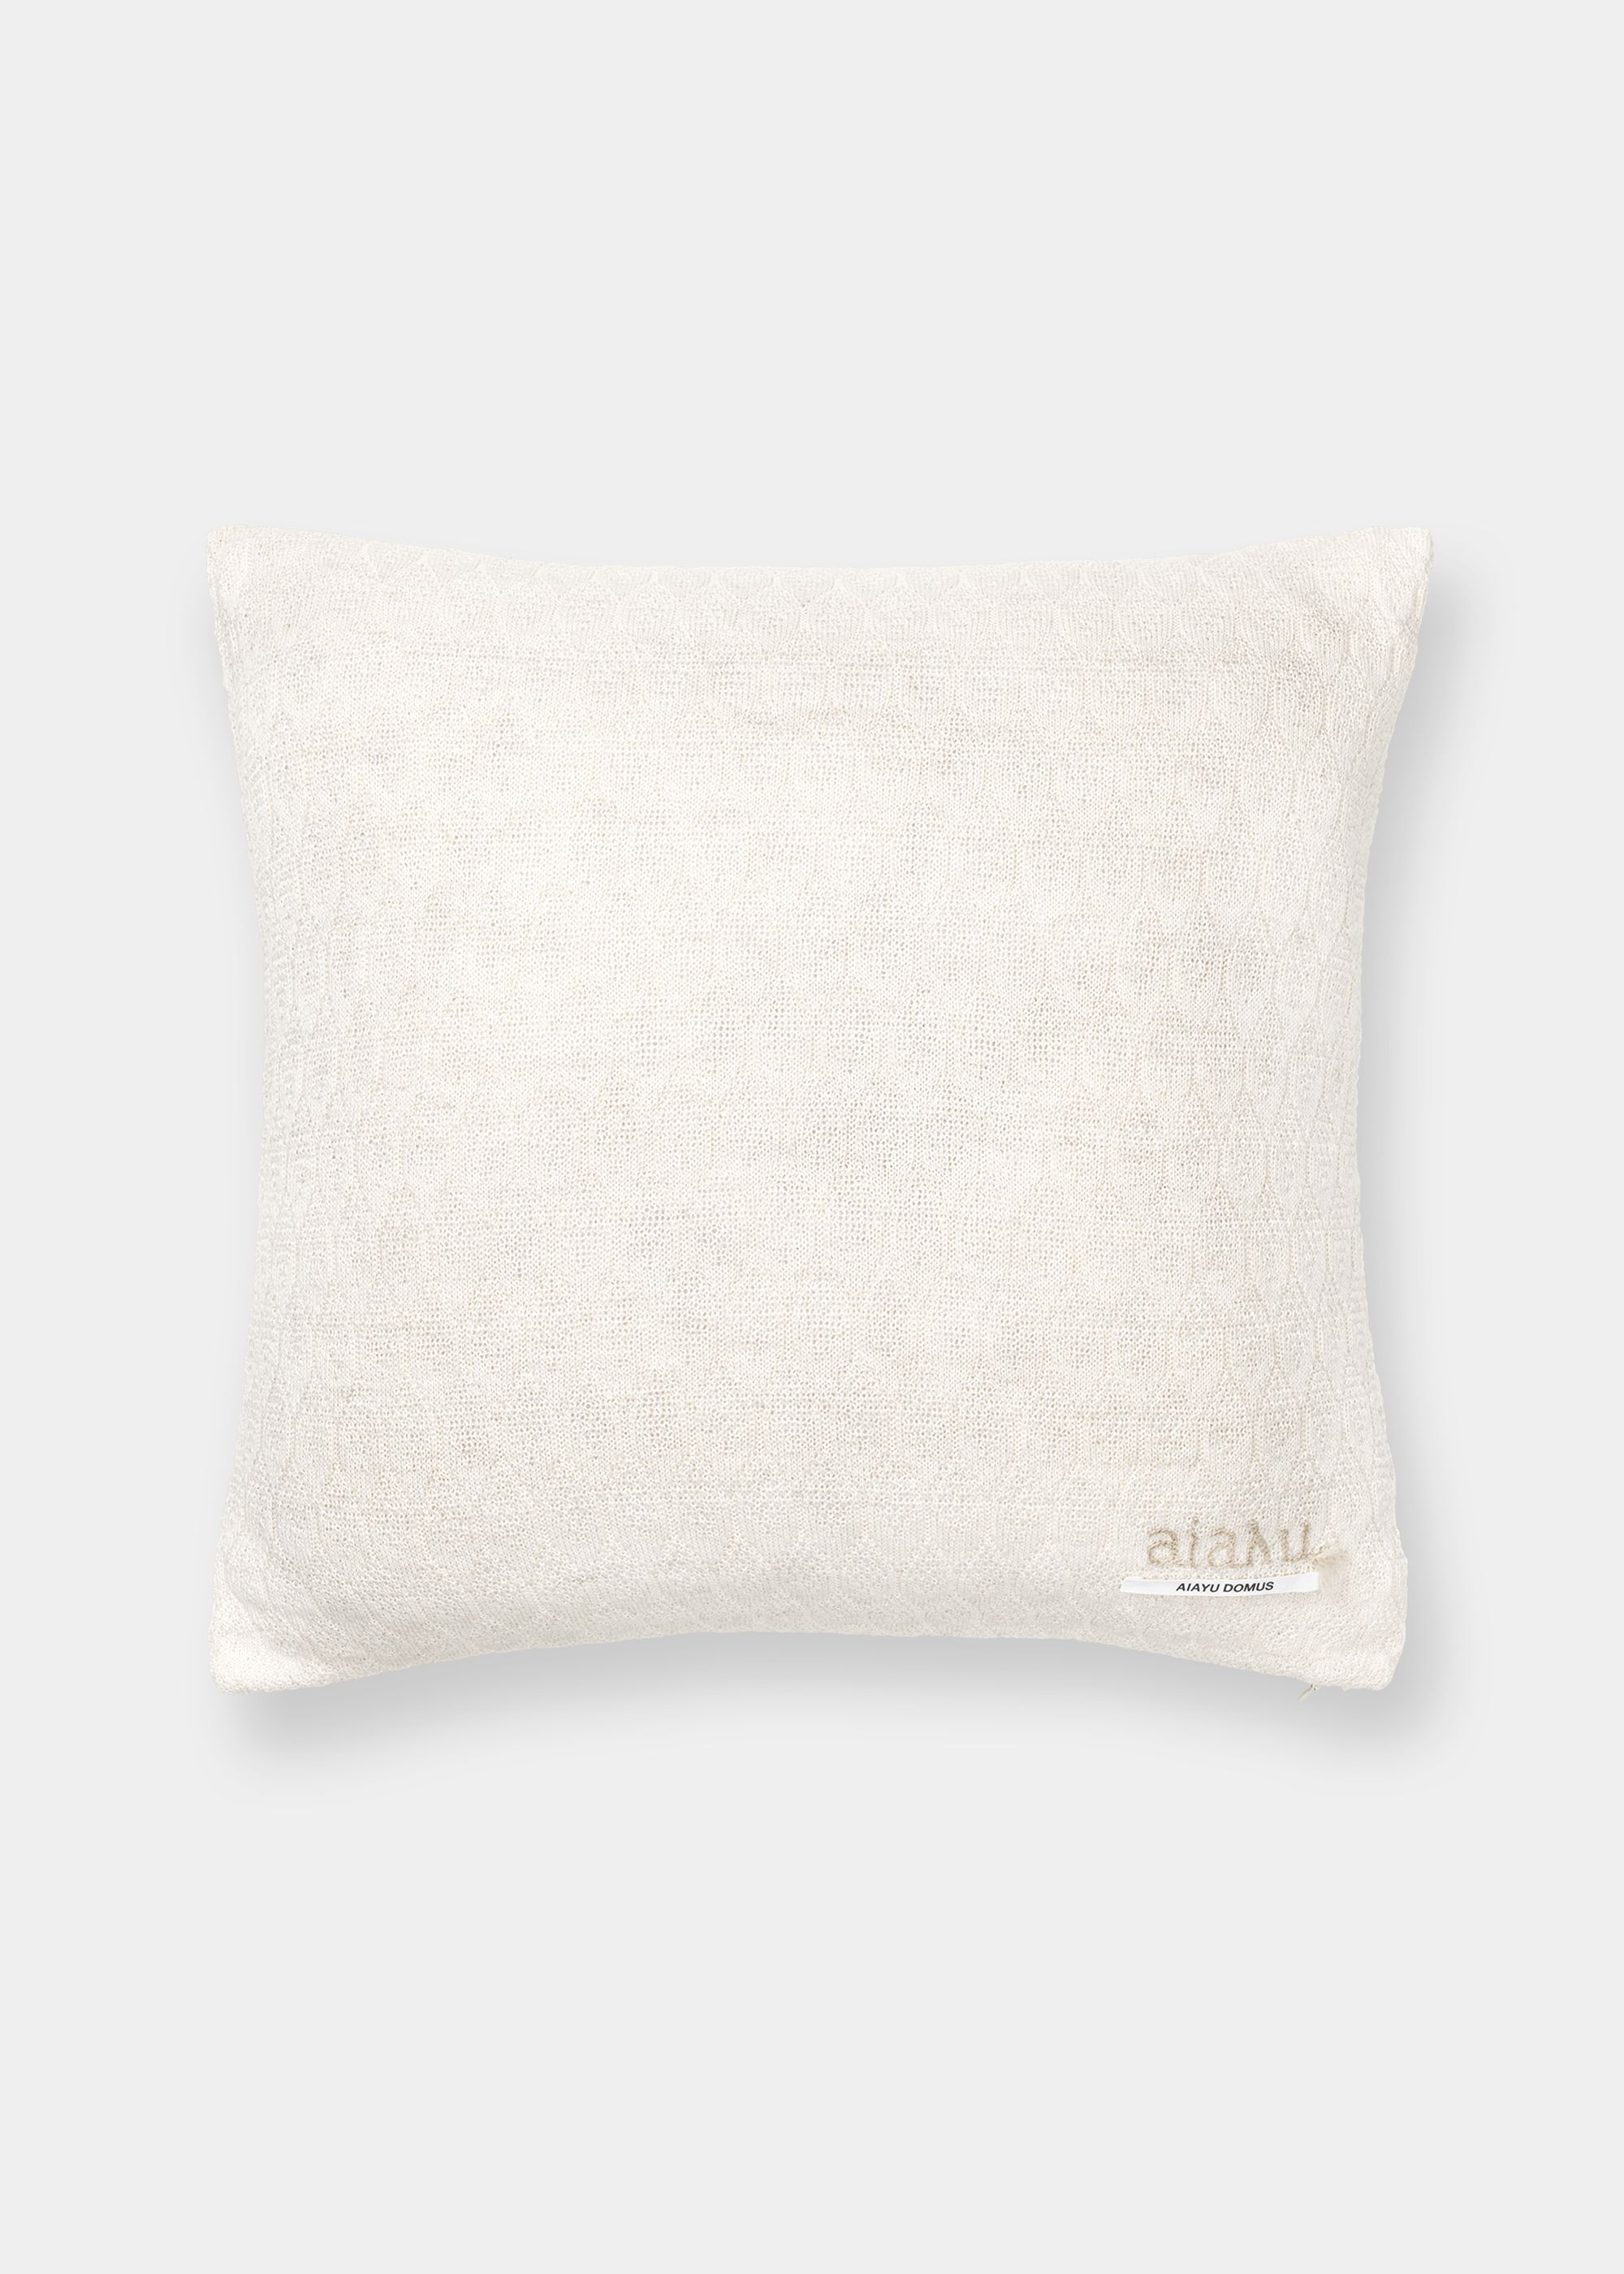 Cushions - Raul pillow (50x50)